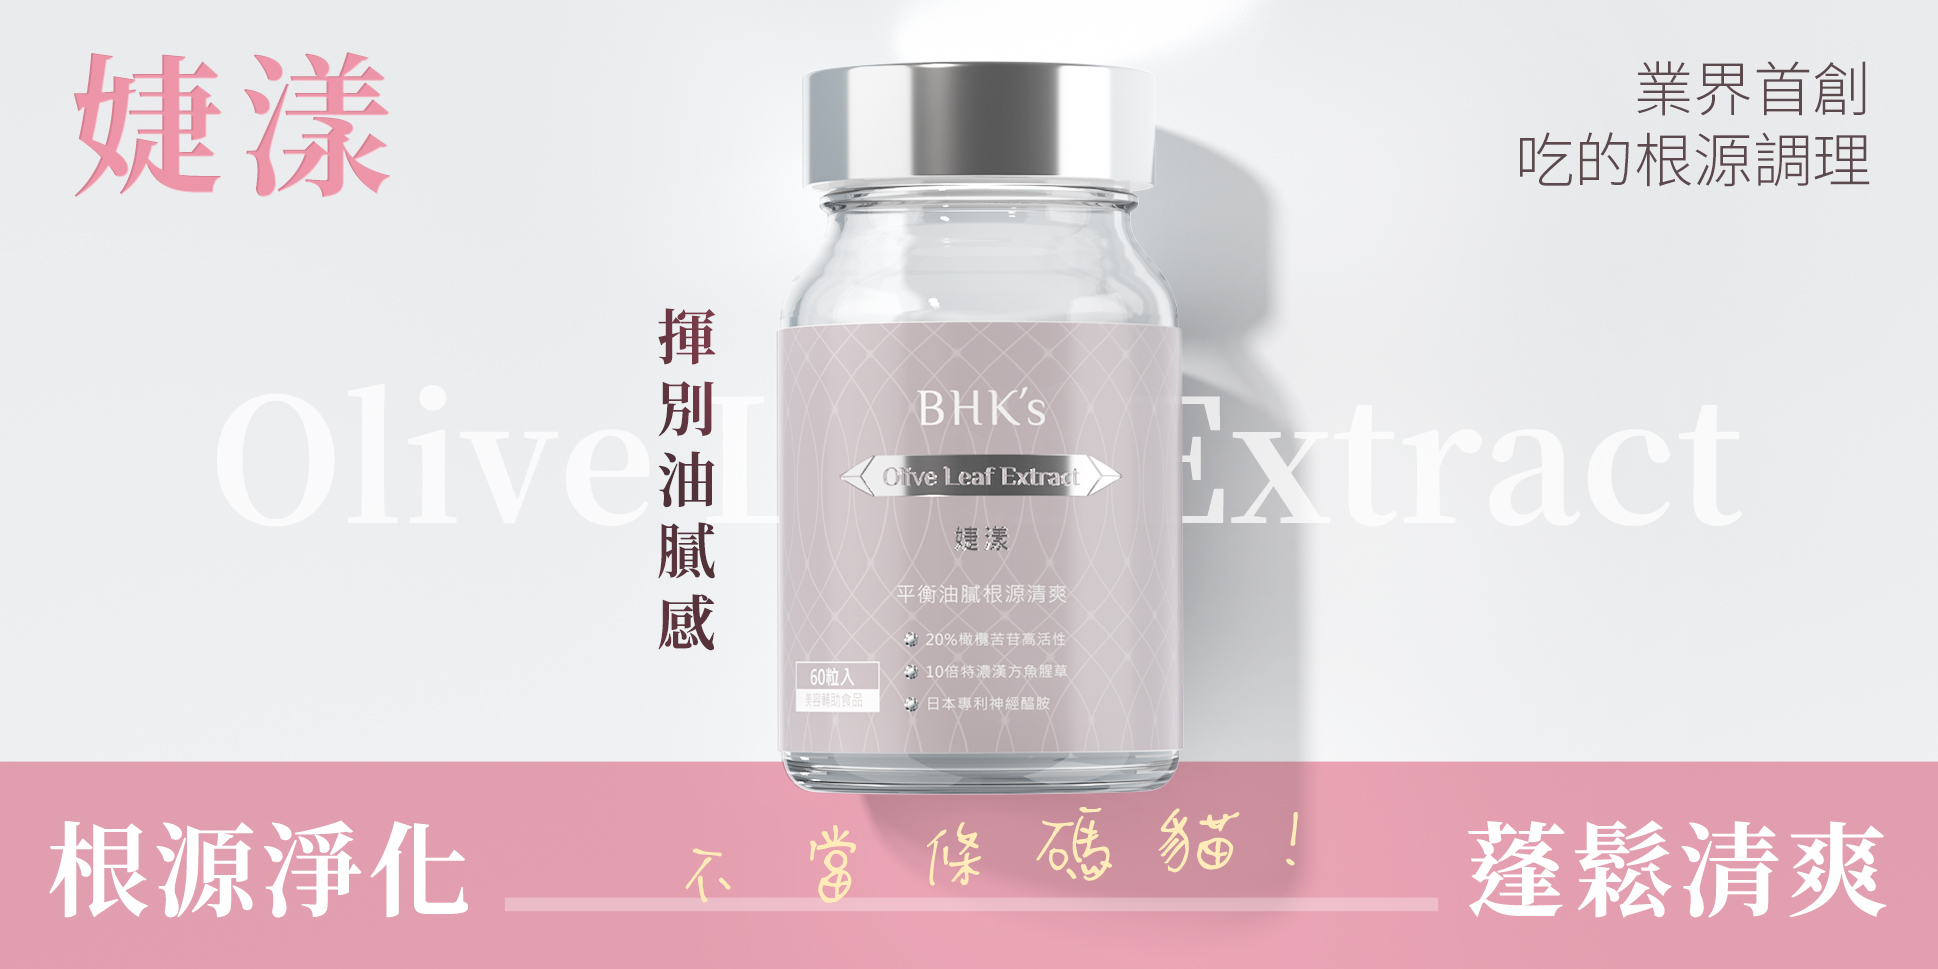 人氣熱銷 - BHK’s 無瑕机力 官方網站︱台灣保健領導品牌